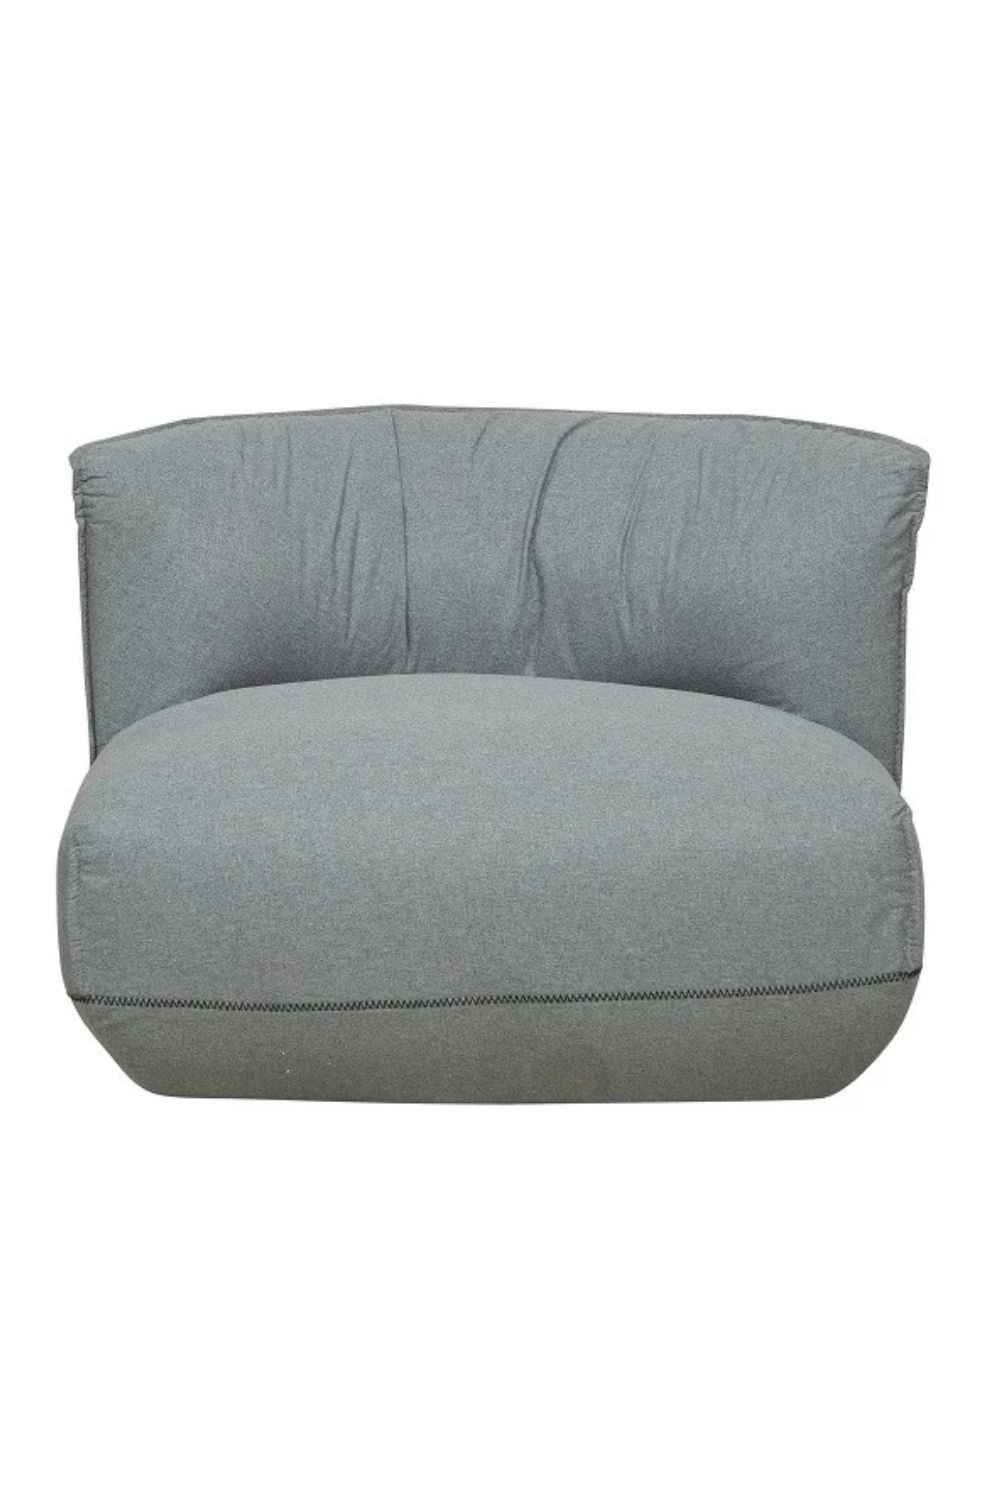 Sinclair 1 Seater Sofa